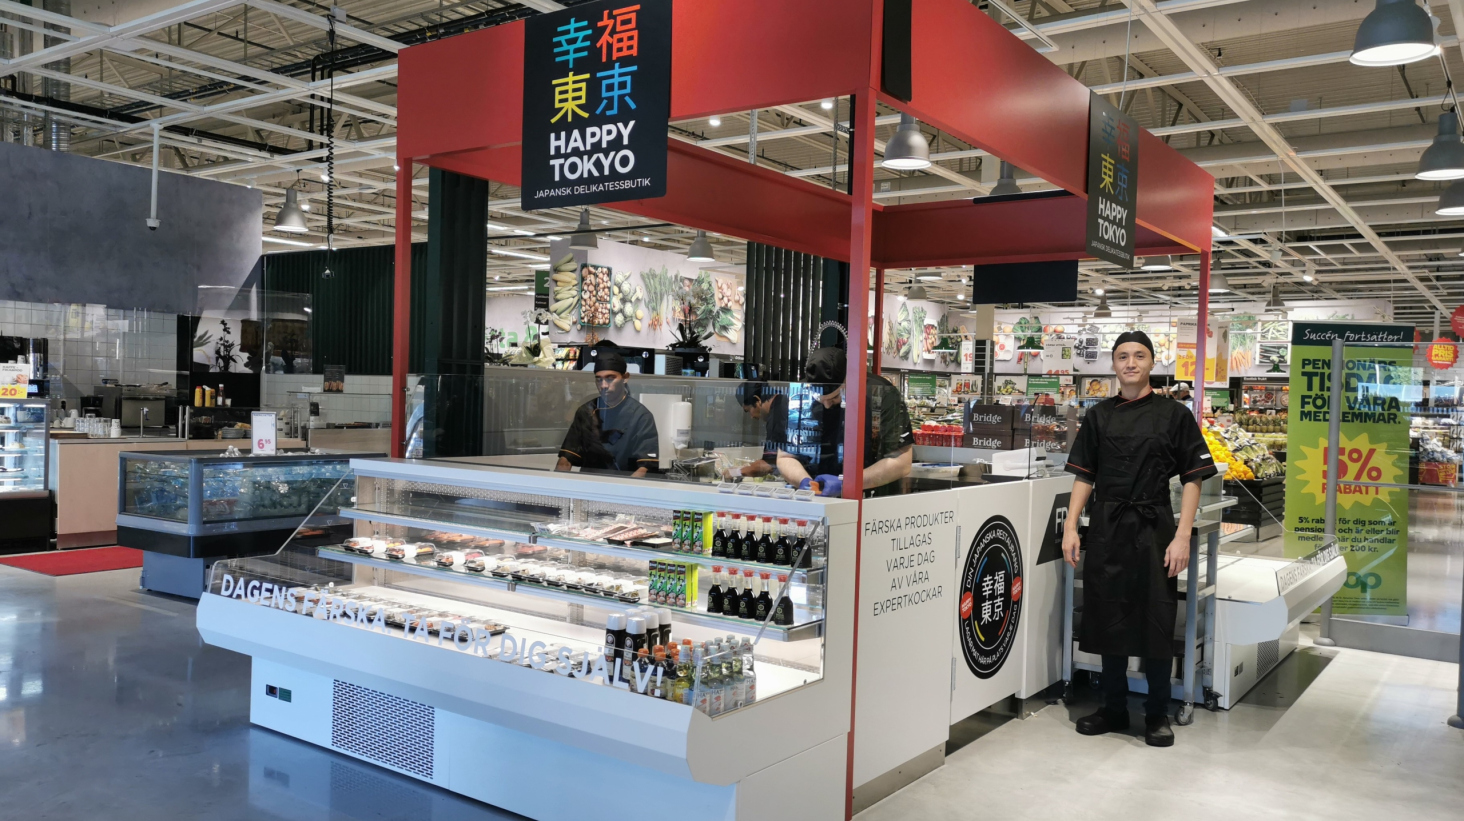 Coop lanserar nytt shop-in-shop koncept med Happy Tokyo